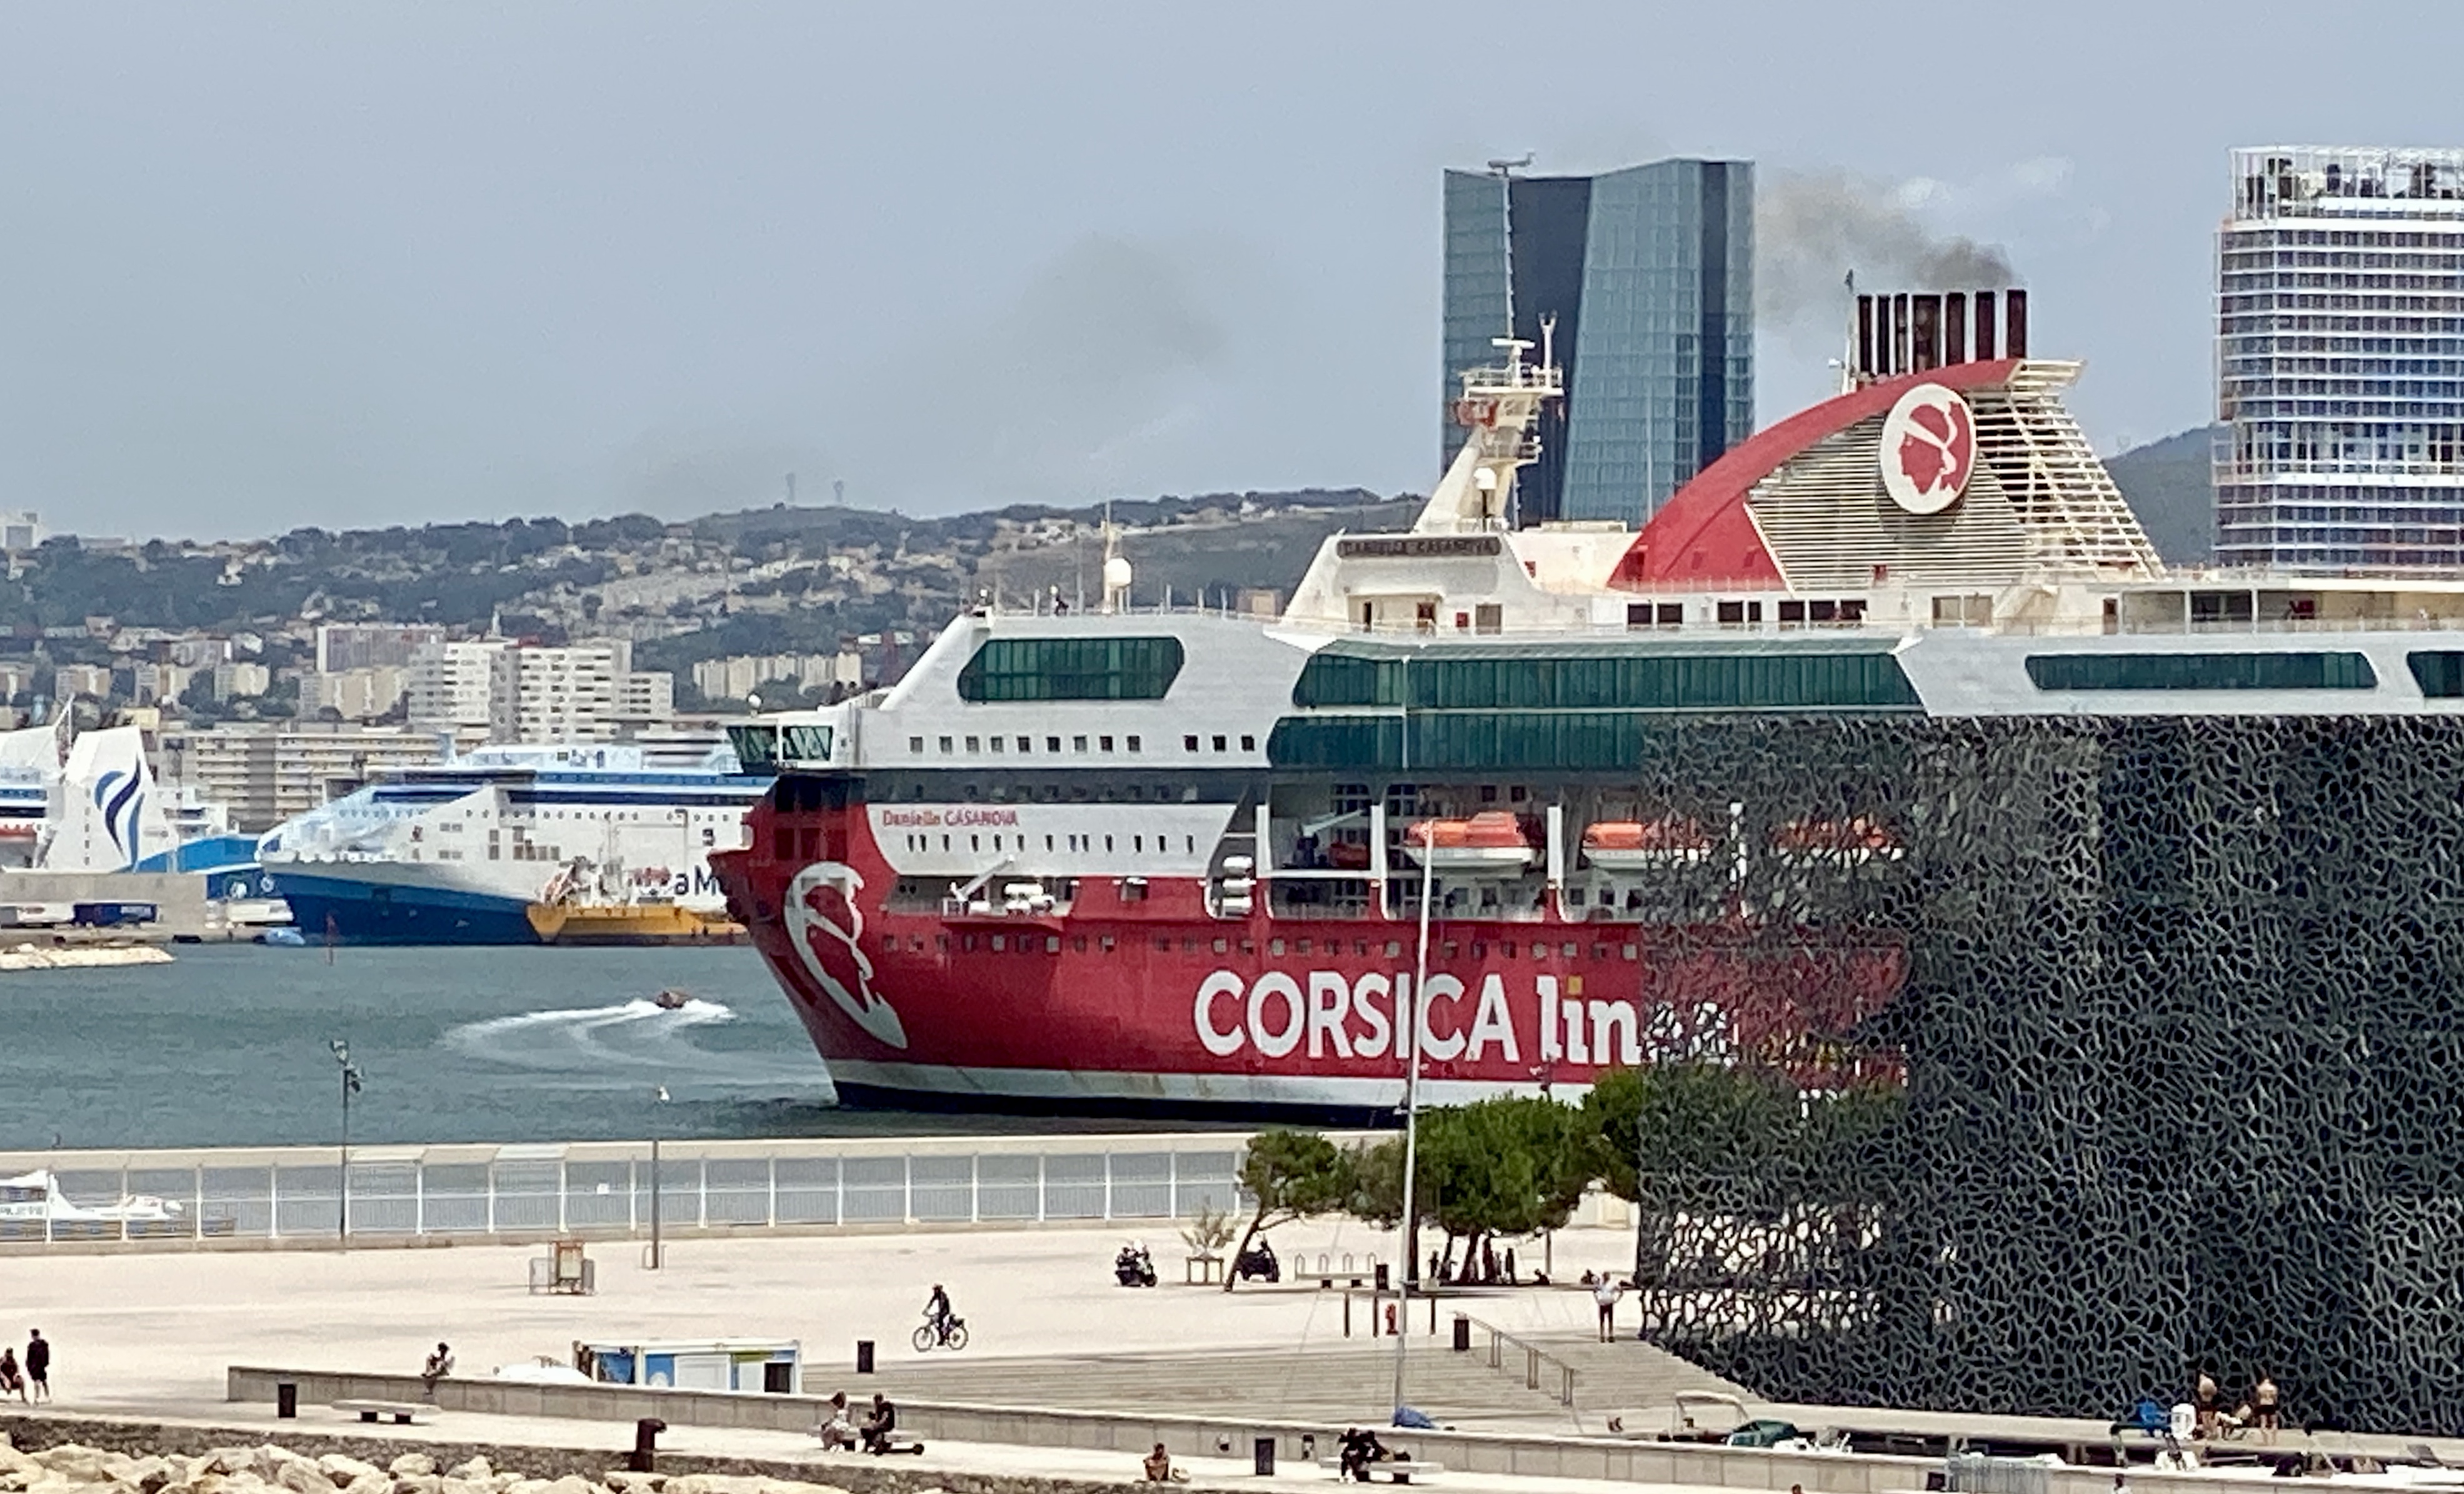 La campagne de mesure est effectuée durant la période des départs en vacances vers la Corse. ©NBC